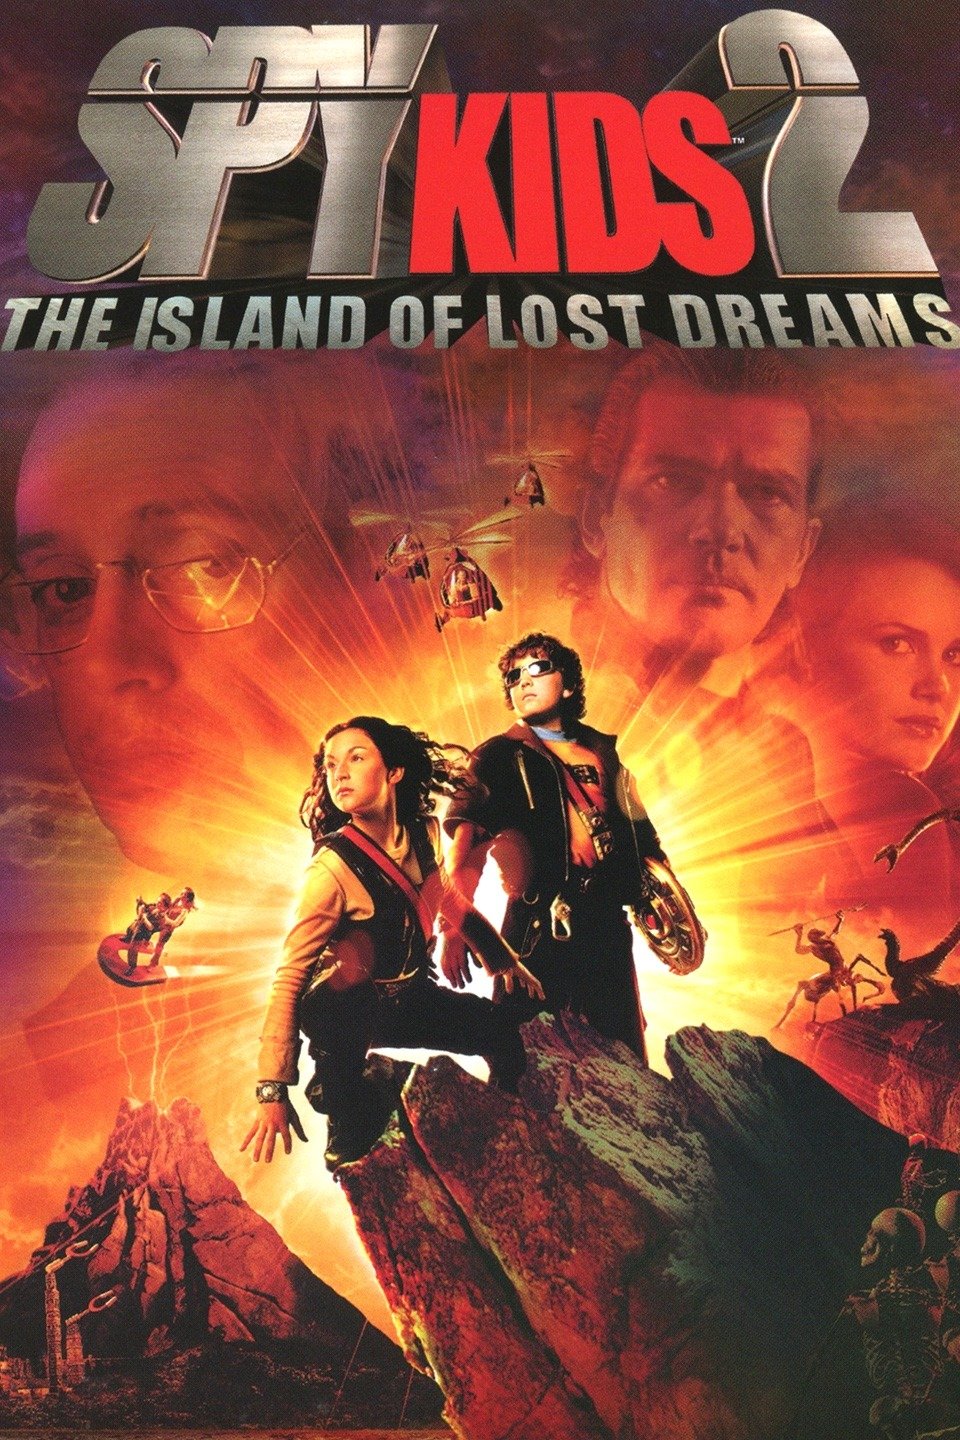 [MINI-HD] Spy Kids 2: Island of Lost Dreams (2002) พยัคฆ์ไฮเทคทะลุเกาะมหาประลัย ภาค 2 [720p] [พากย์ไทย 5.1 + อังกฤษ 5.1] [บรรยายไทย] [เสียงไทย + ซับไทย]